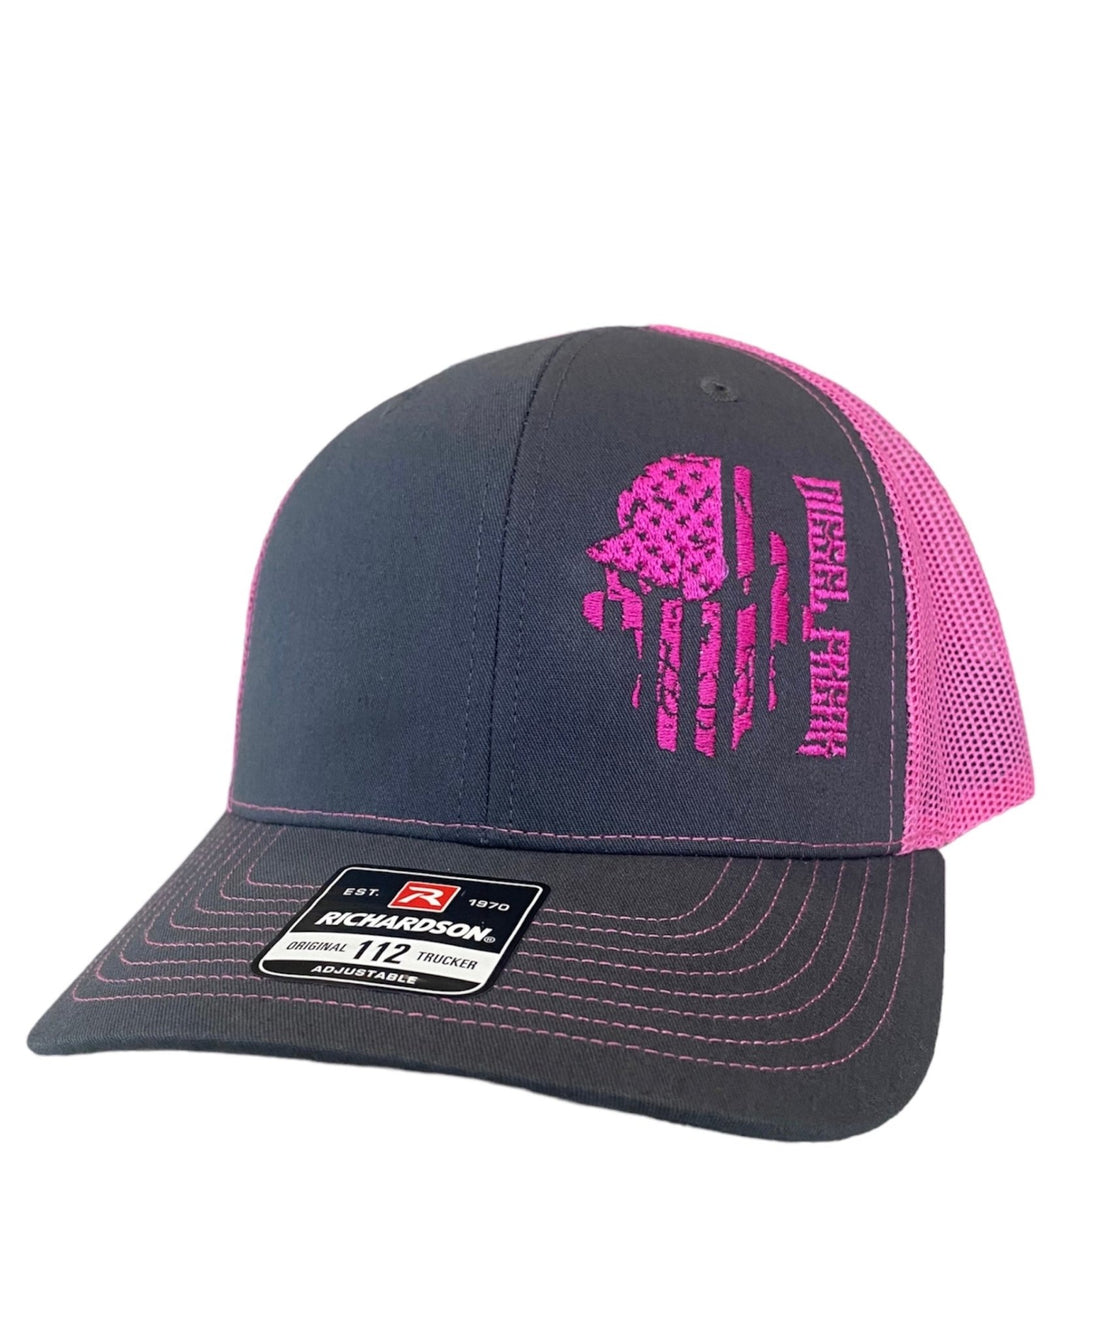 Neon Pink Flag Skully Snapback Hat - Diesel Freak